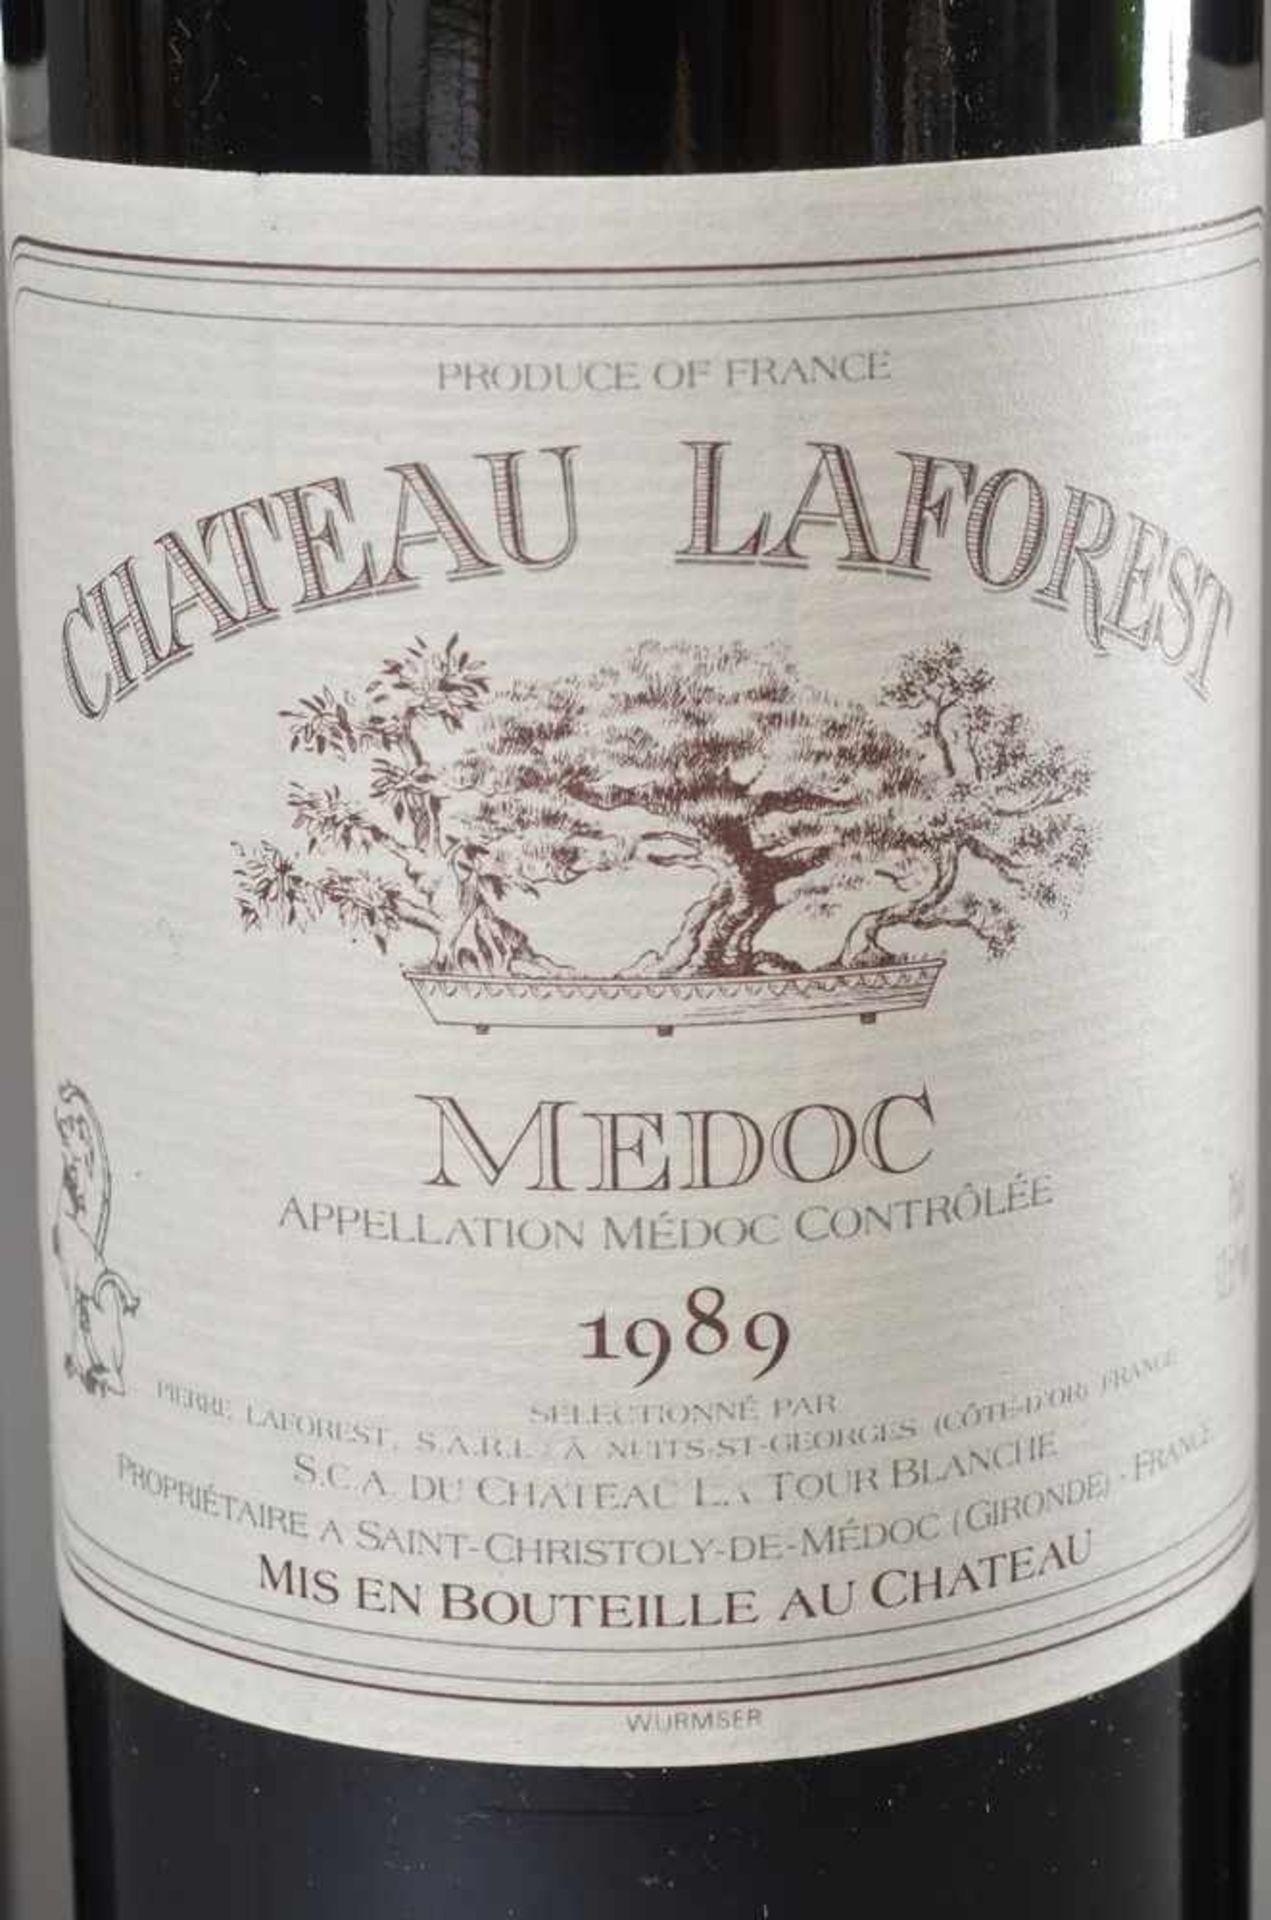 3 Flaschen 1989 Chateau LaForest, Medoc, Bordeaux Rotwein, 750ml - Bild 2 aus 3